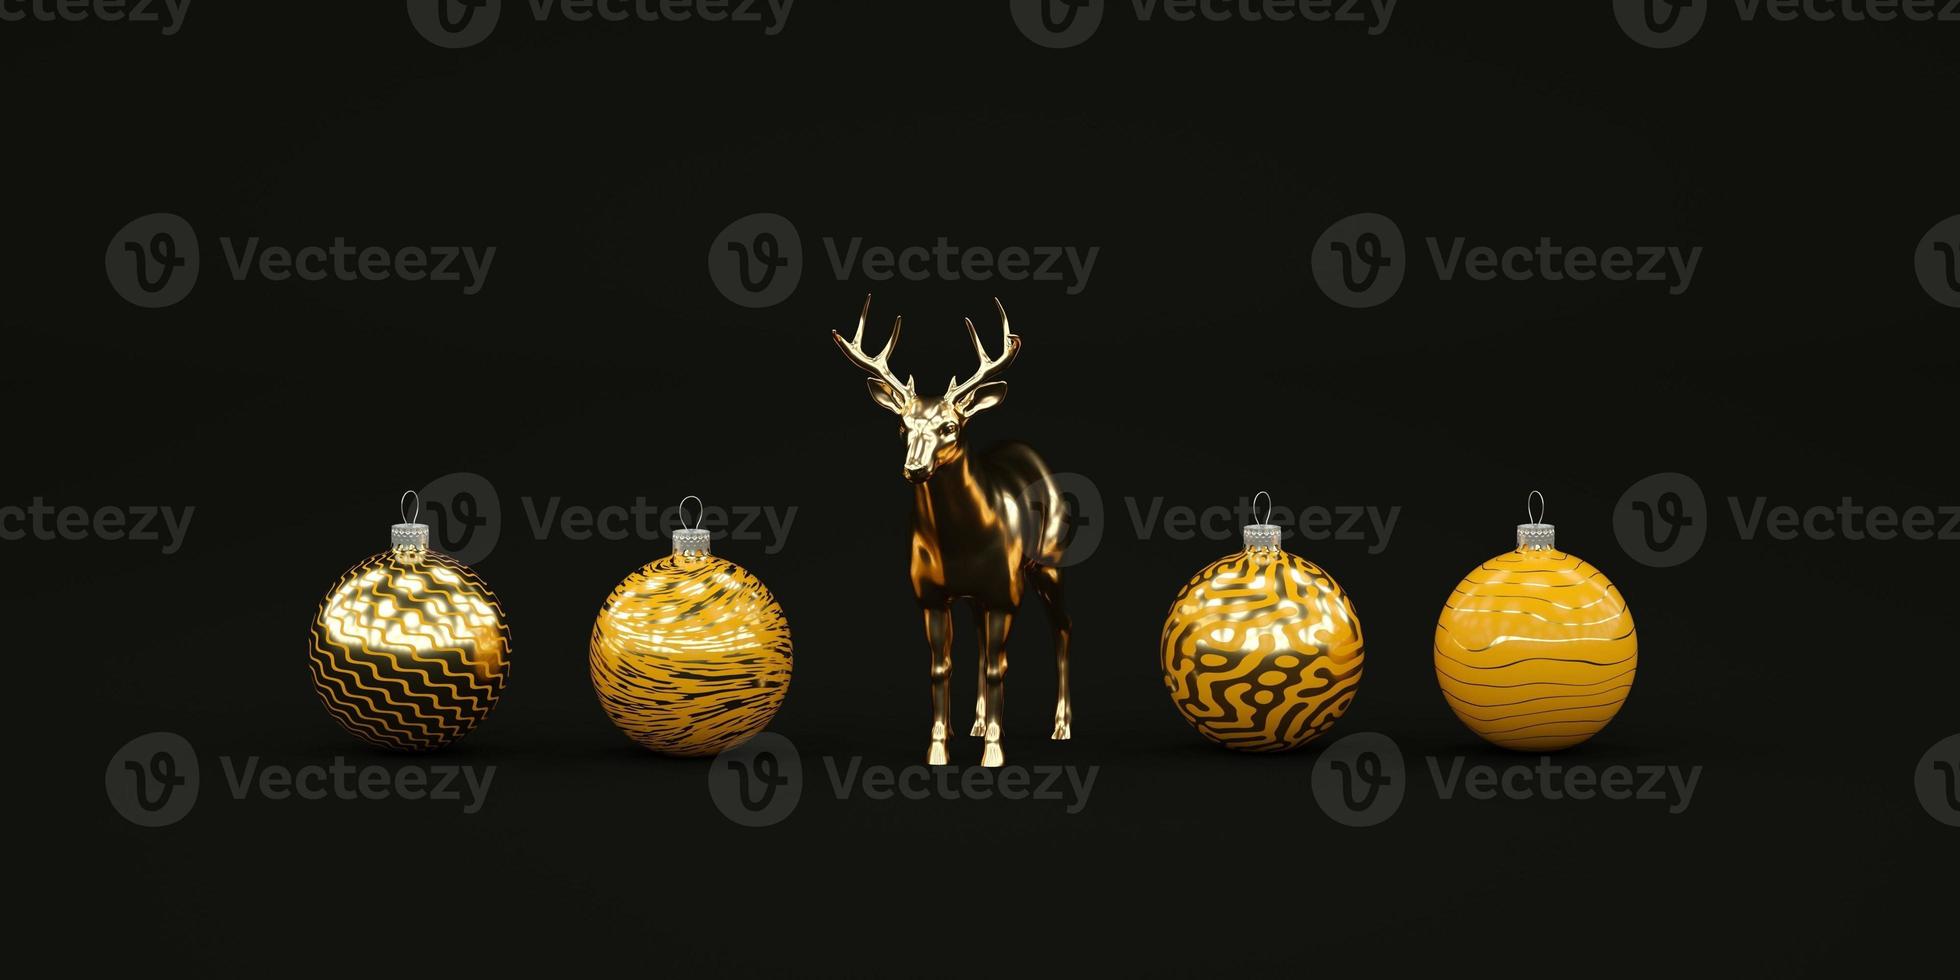 Composición navideña oscura mínima con juguetes navideños amarillos y ciervo dorado render 3d foto